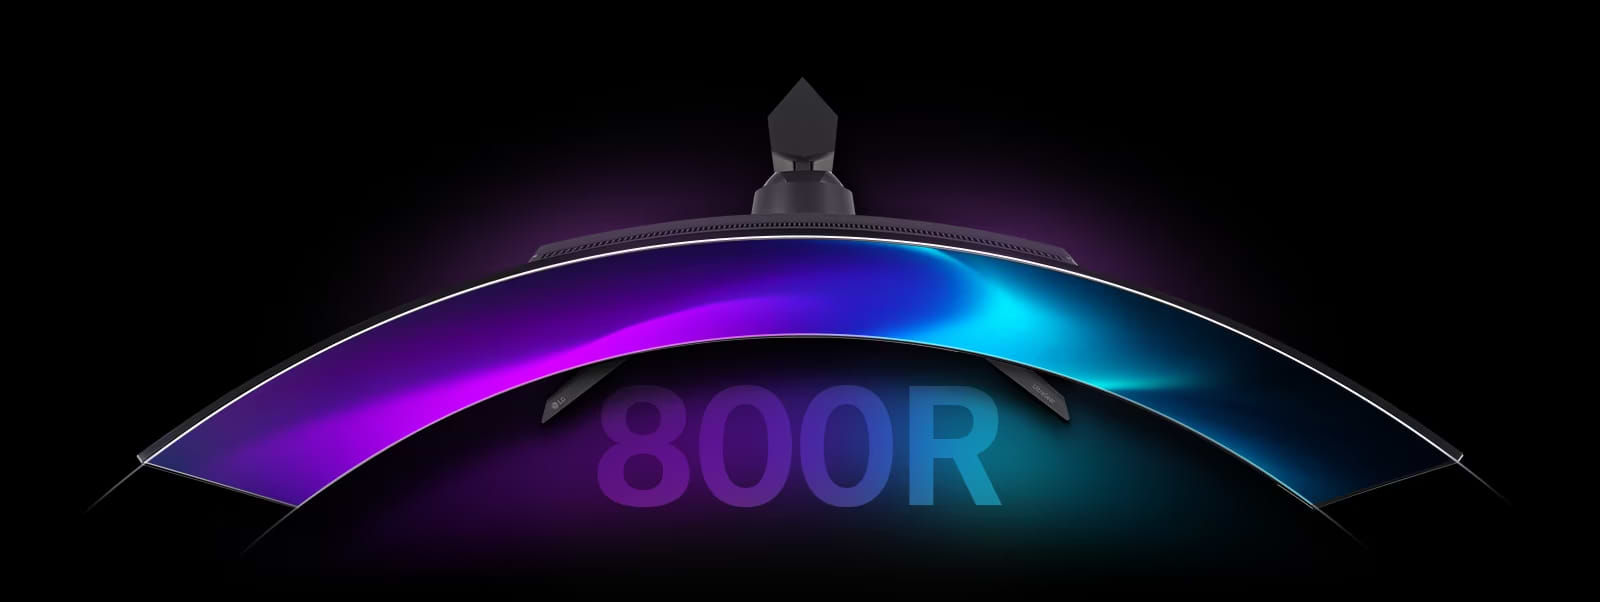 מסך מחשב גיימינג קעור 45'' LG UltraGear 45GR95QE-B G-Sync OLED WQHD HDR10 0.03ms 240Hz - צבע שחור שלוש שנות אחריות ע"י היבואן הרשמי